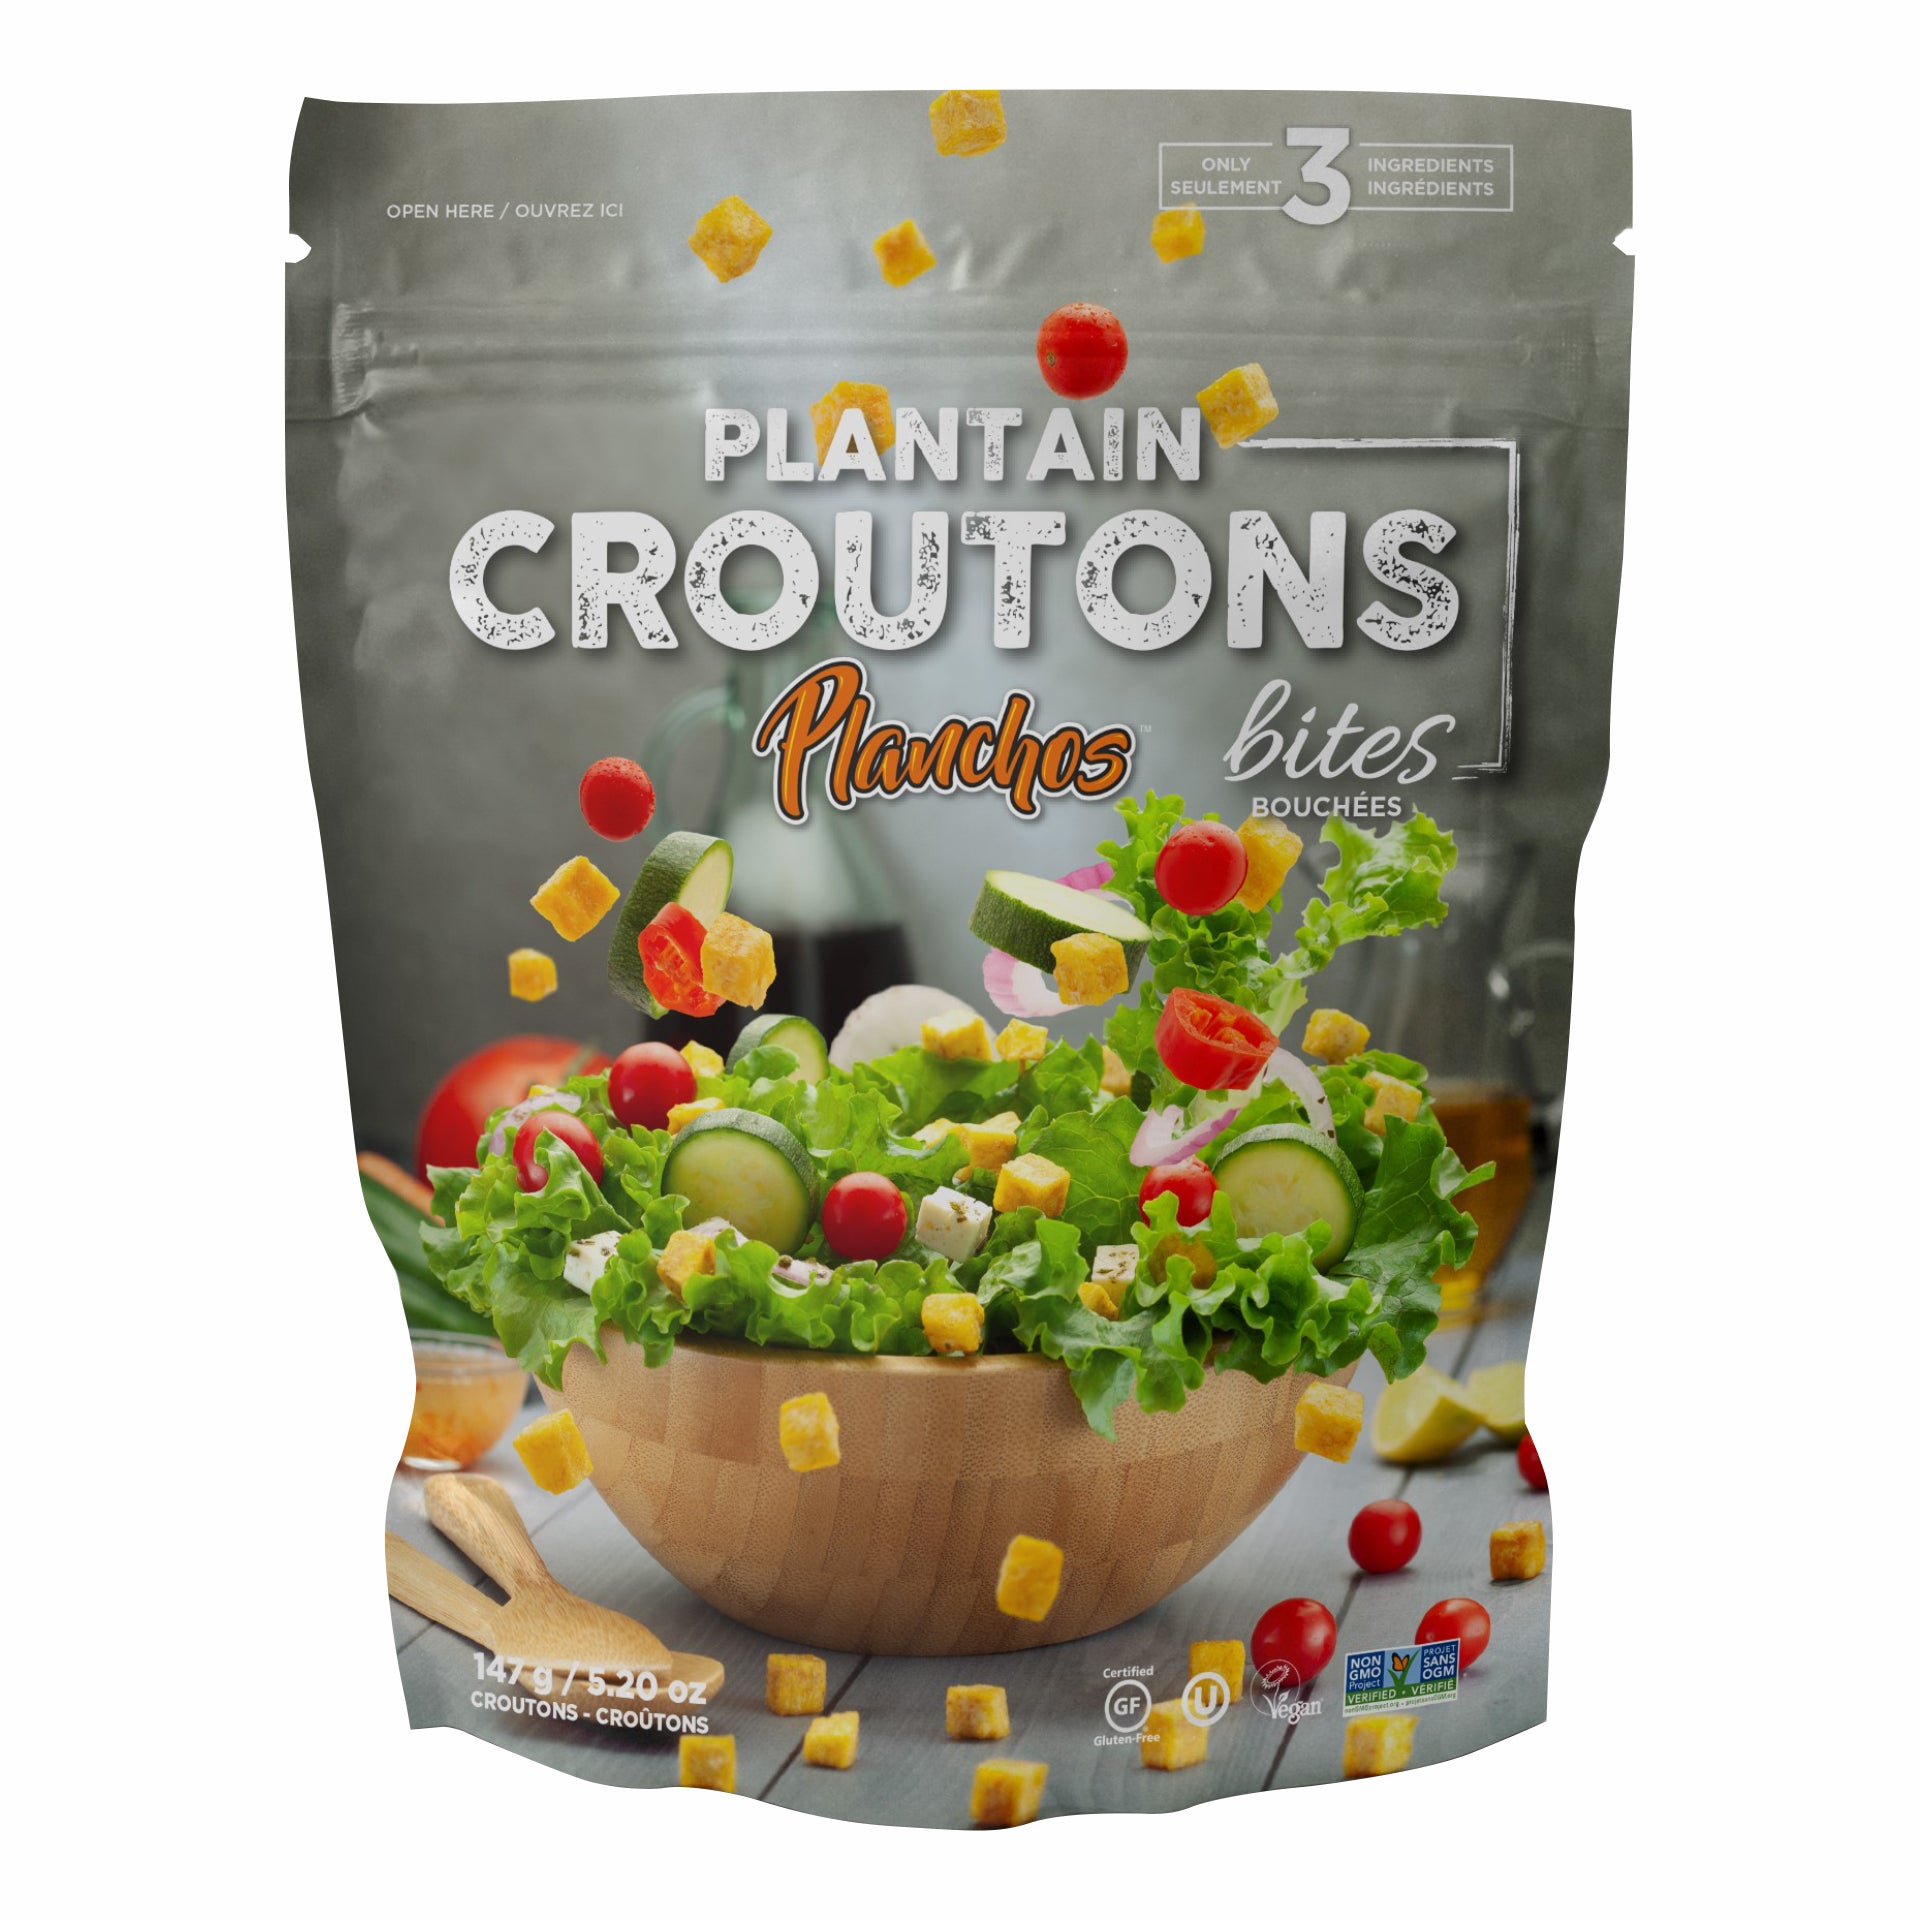 Plantain Croutons Planchos 12/5.19oz